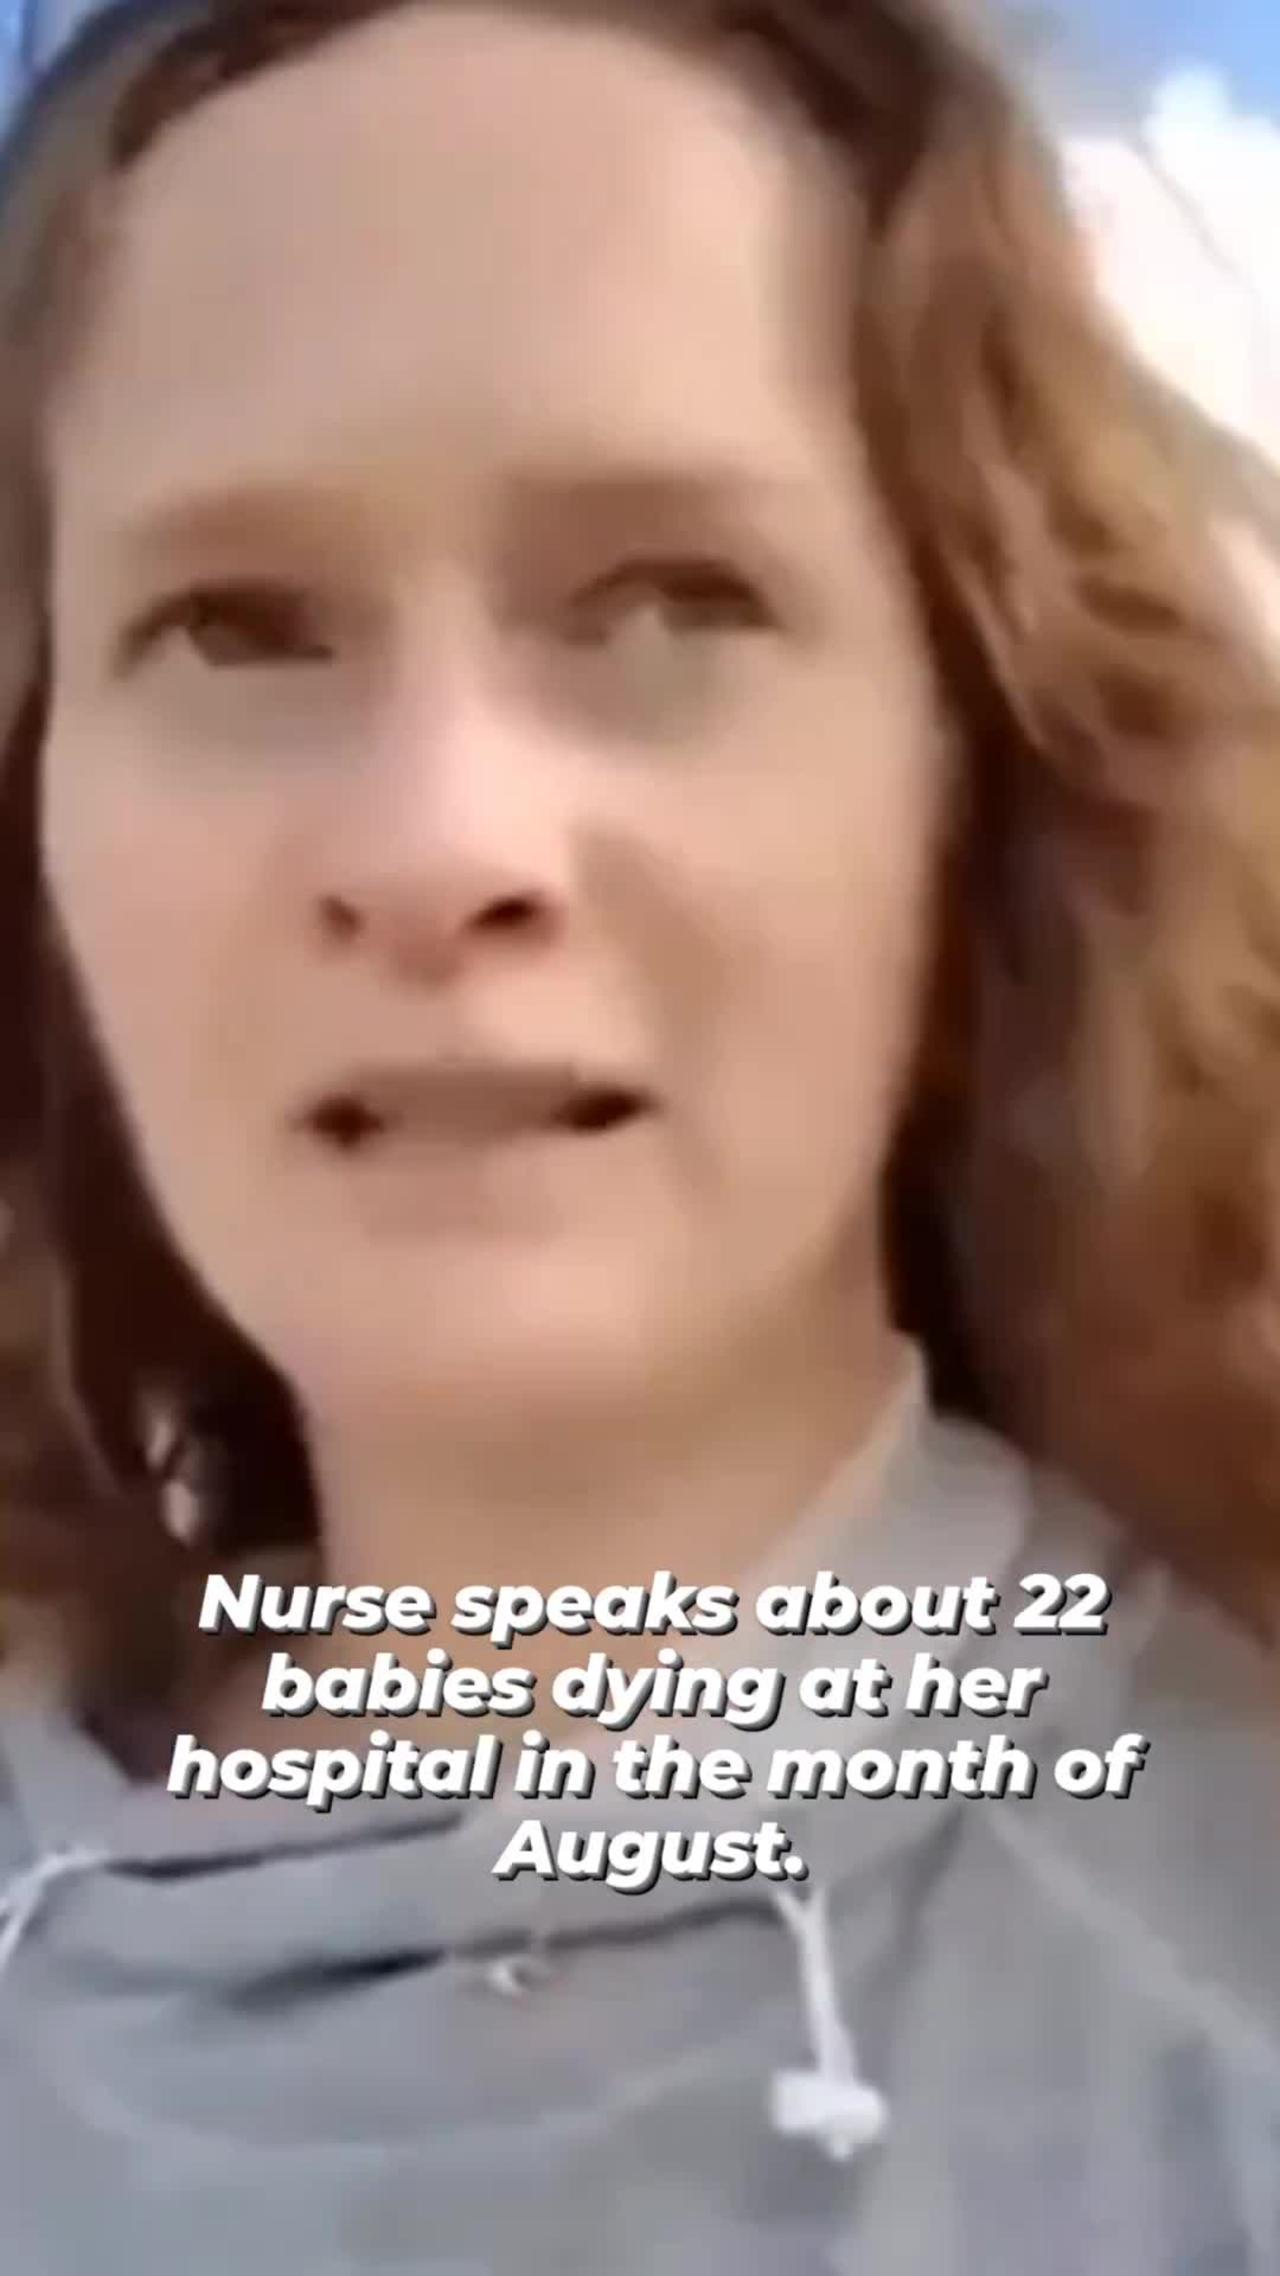 Nurse has 22 babies die in hospital in August 2022